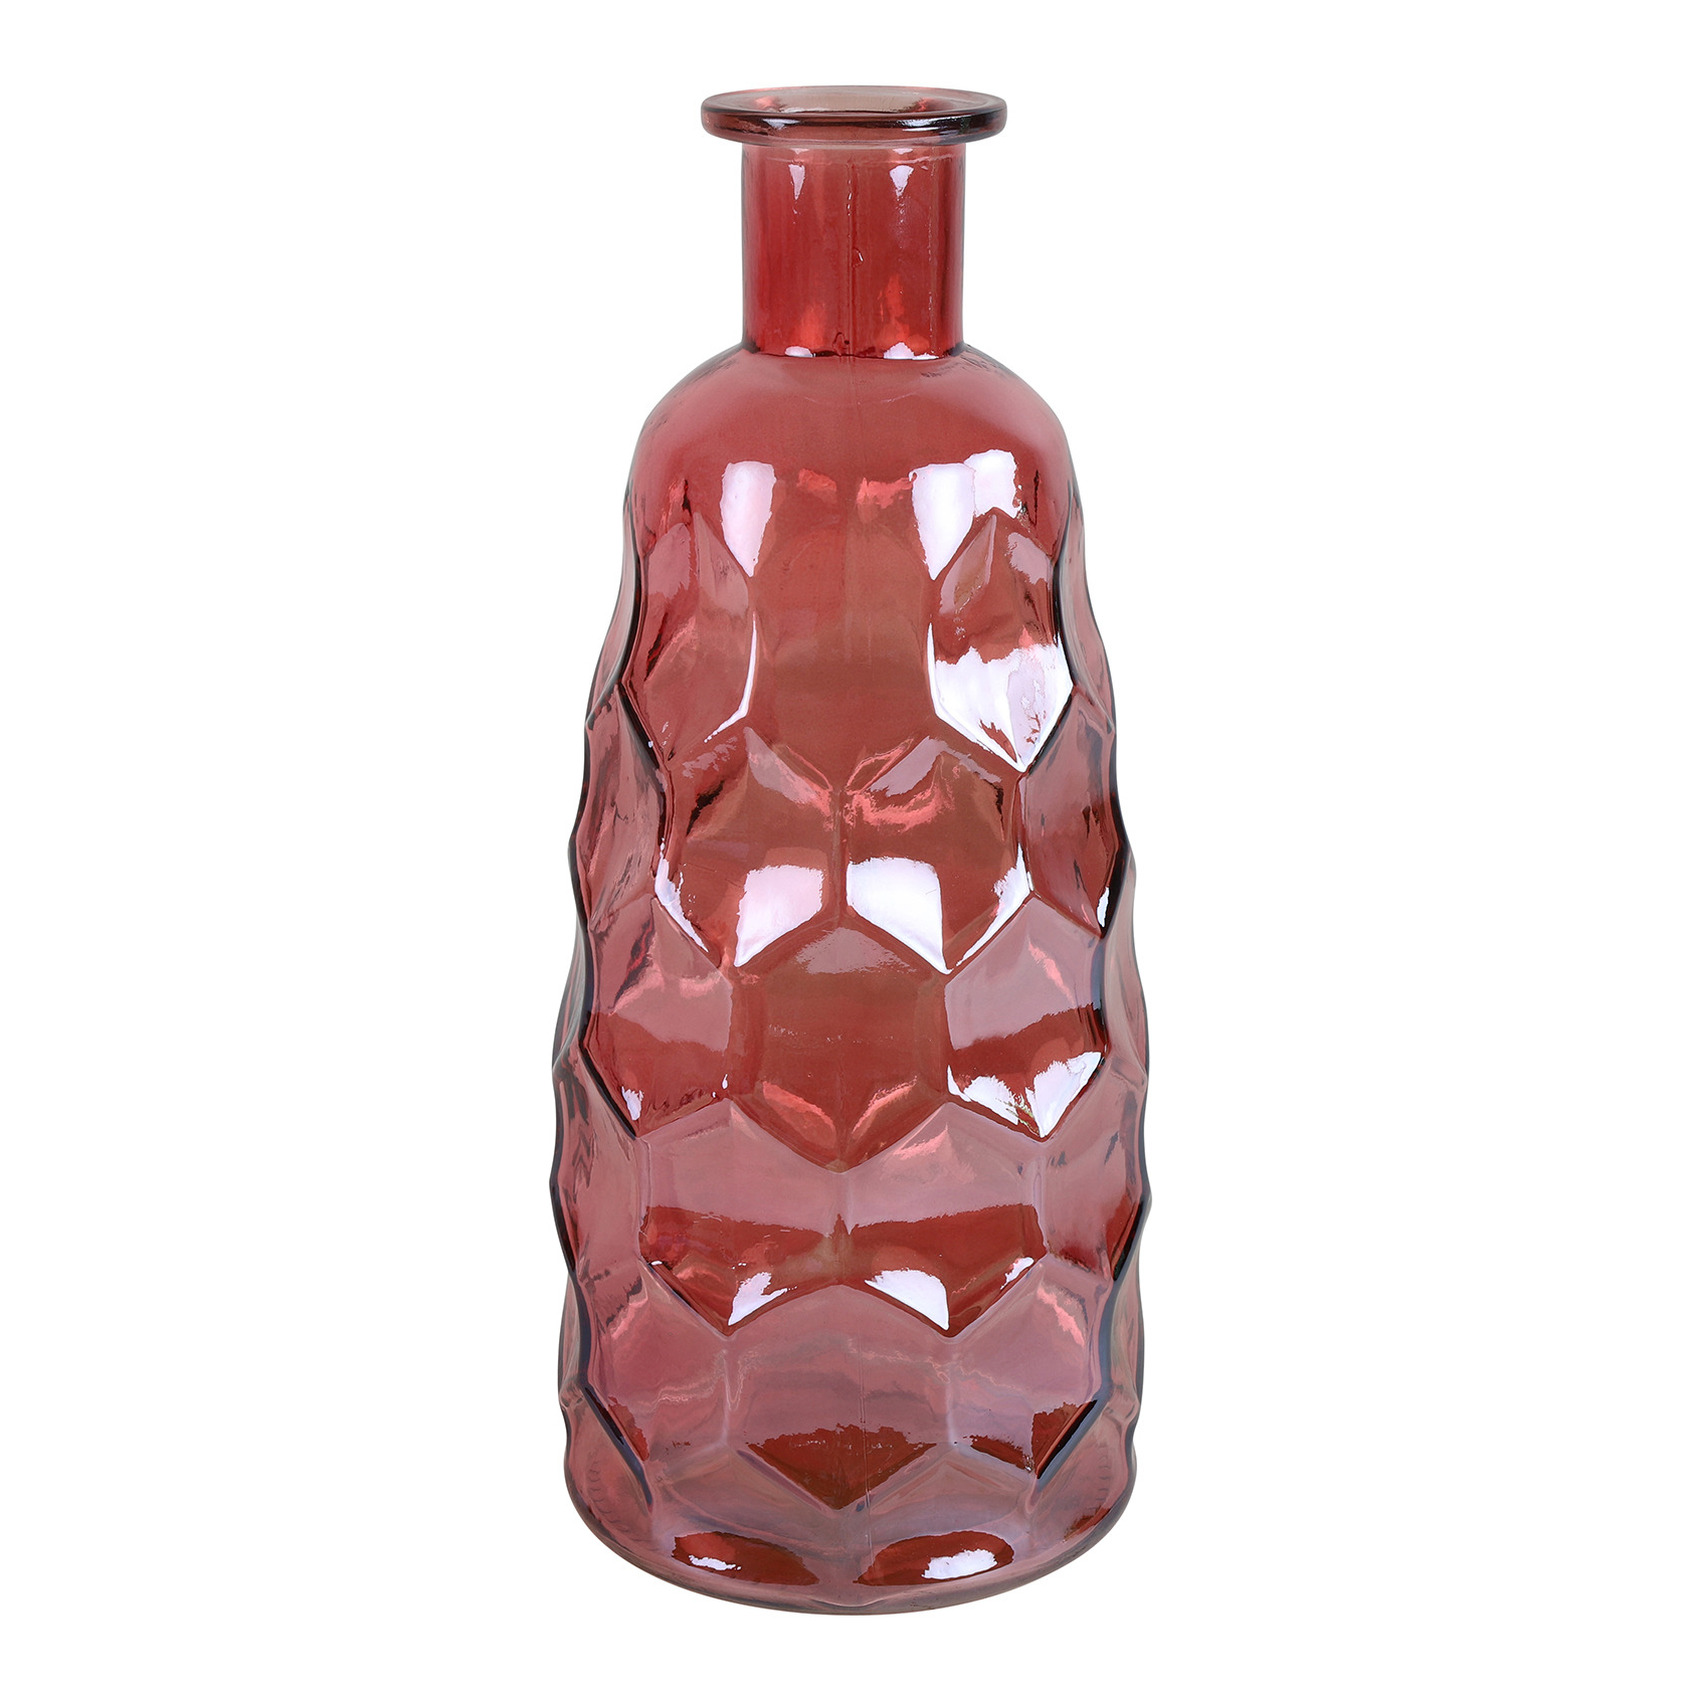 Countryfield Art Deco bloemenvaas donkerroze transparant glas fles vorm D12 x H30 cm